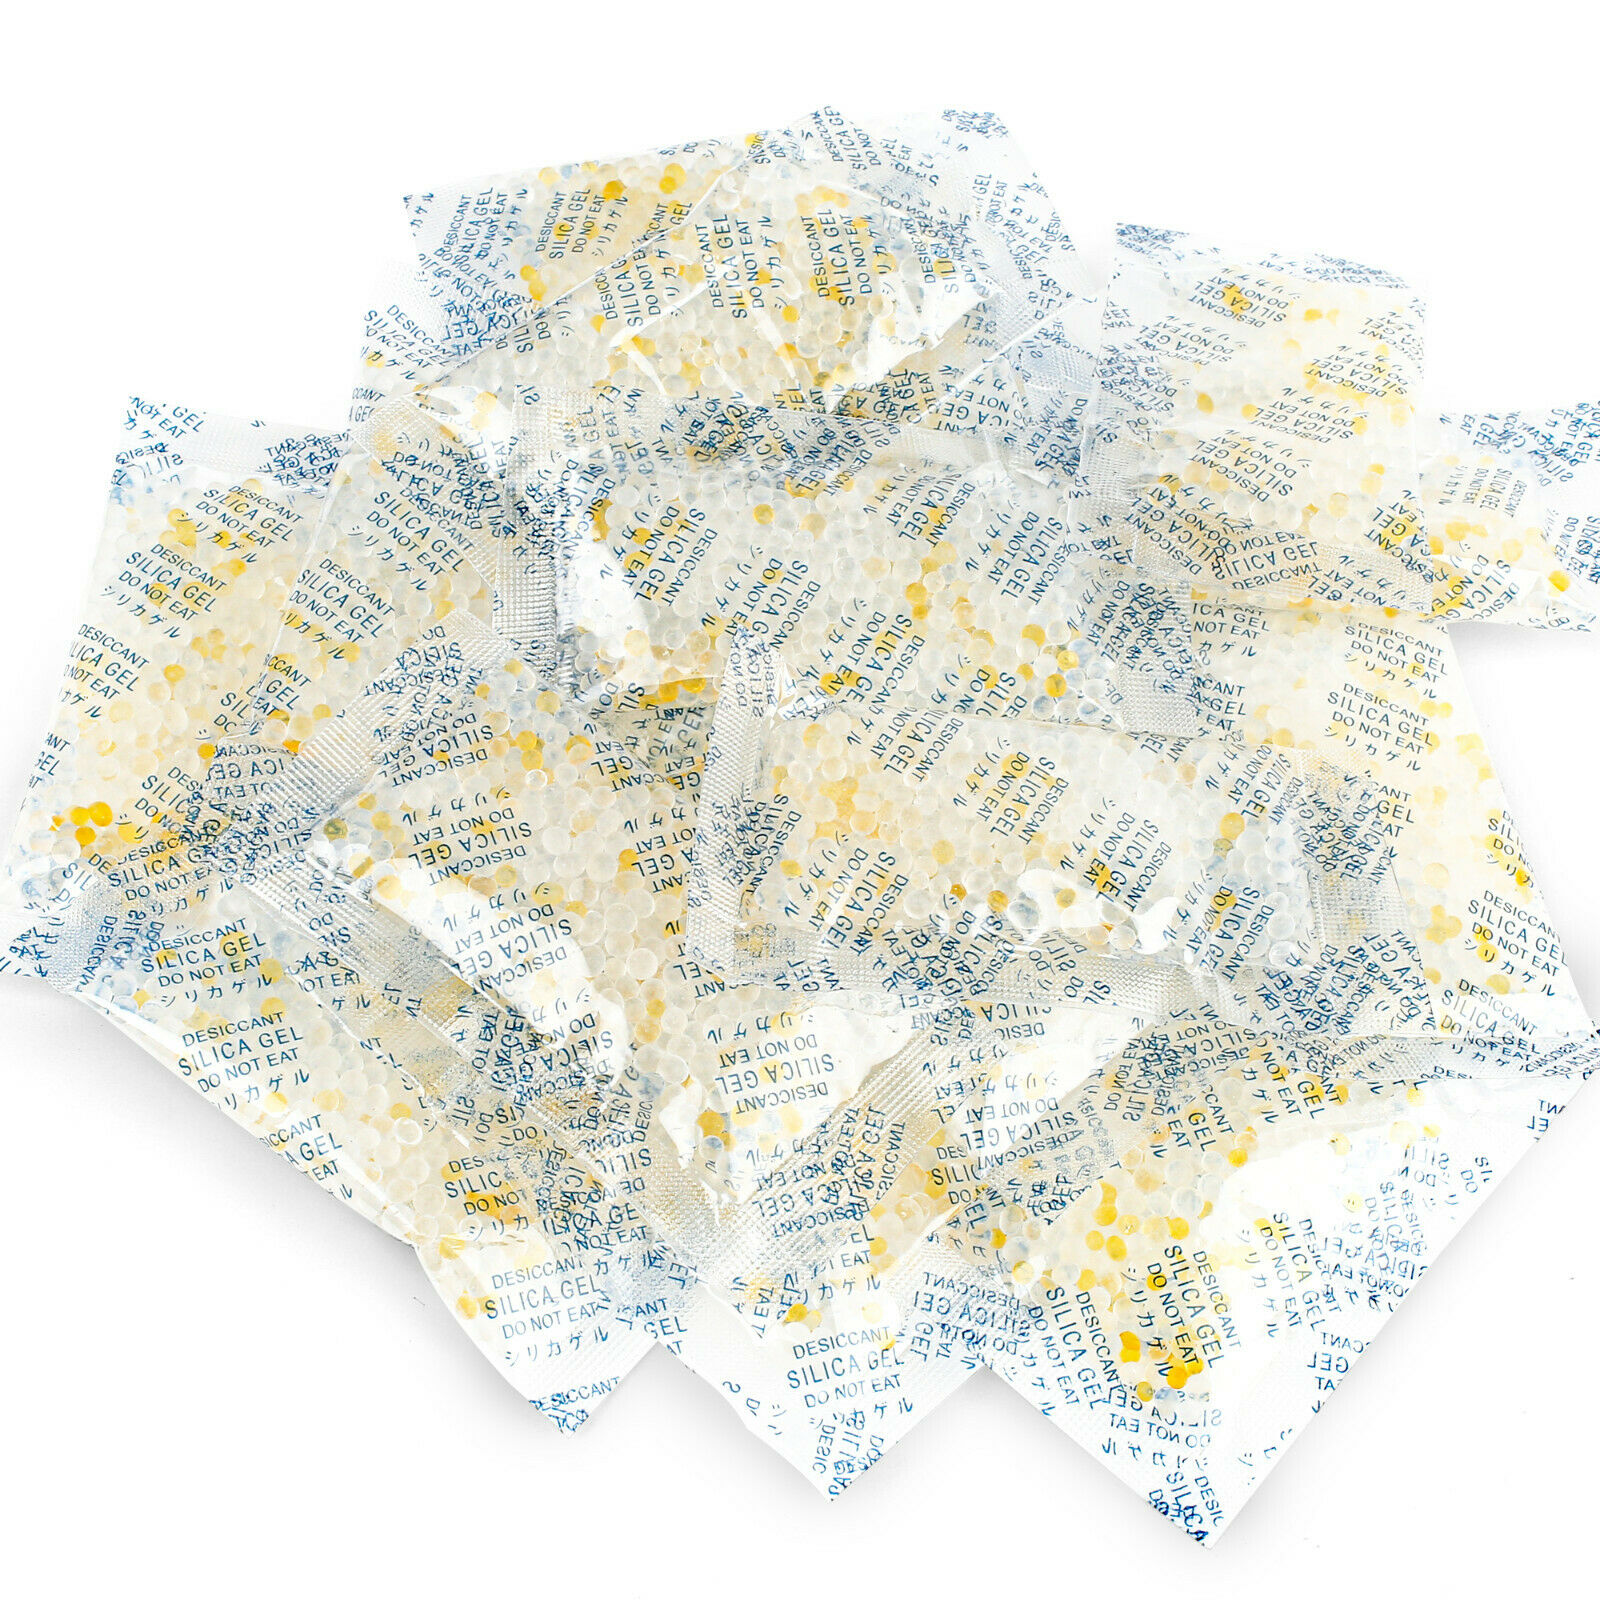 10g Gram Silica Gel Desiccant Packets Safe Moisture Absorbing Dry Bag Pack Of 32